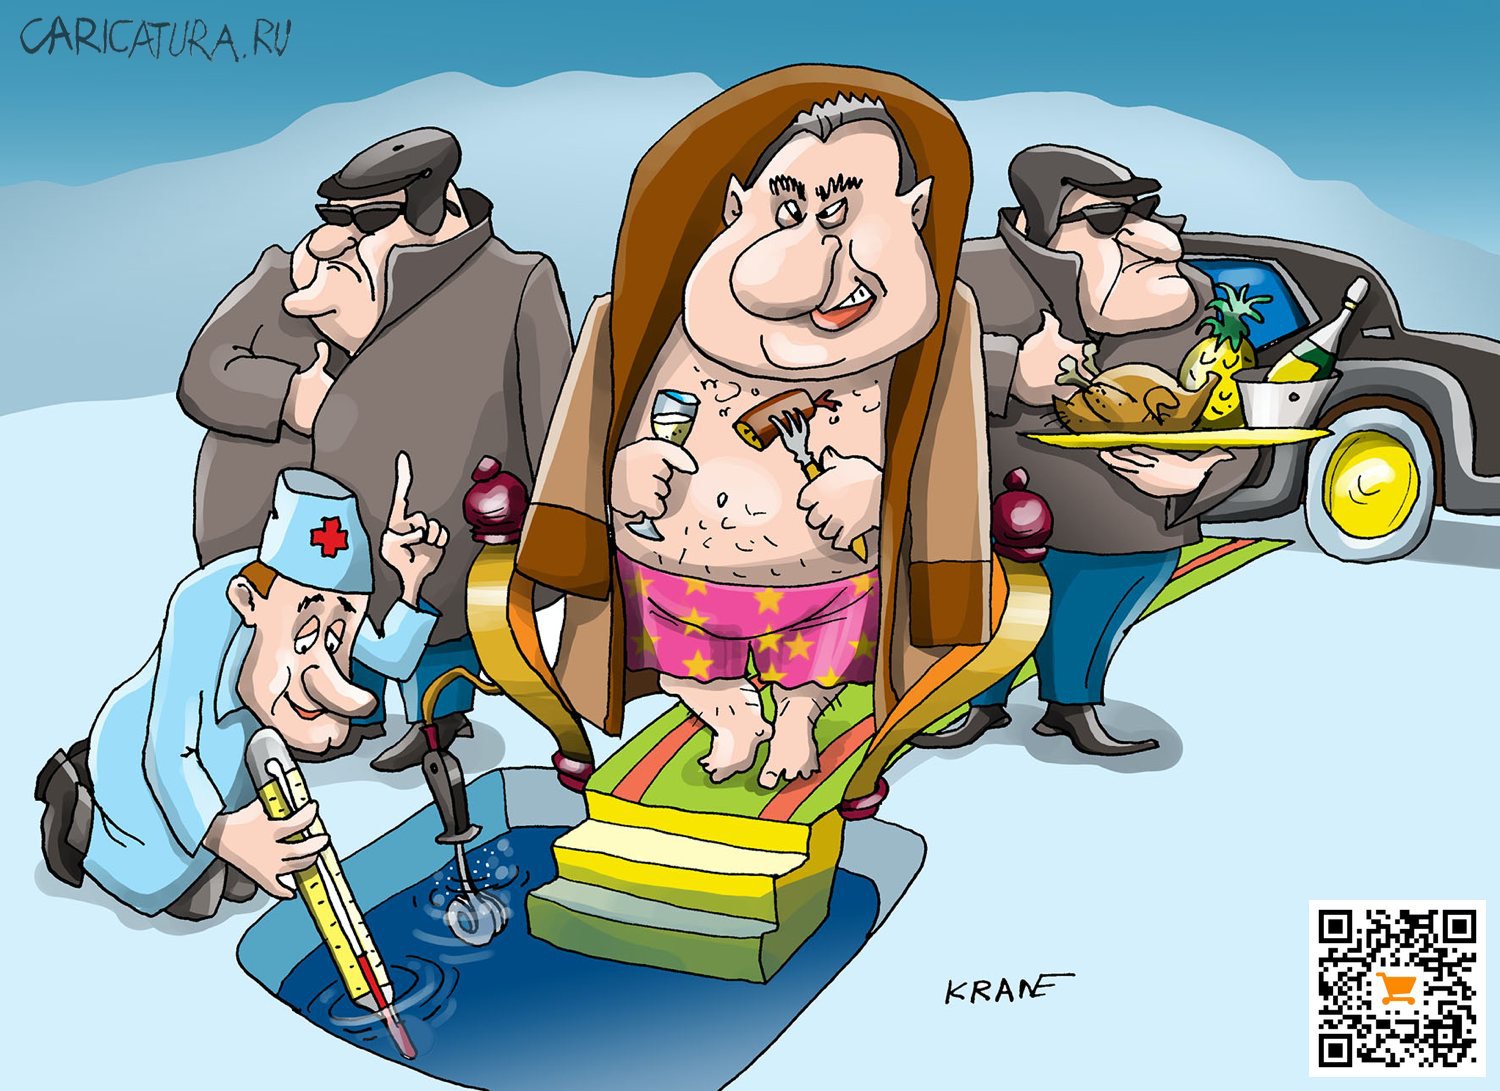 Карикатура "Пили-ели: до купели...", Евгений Кран